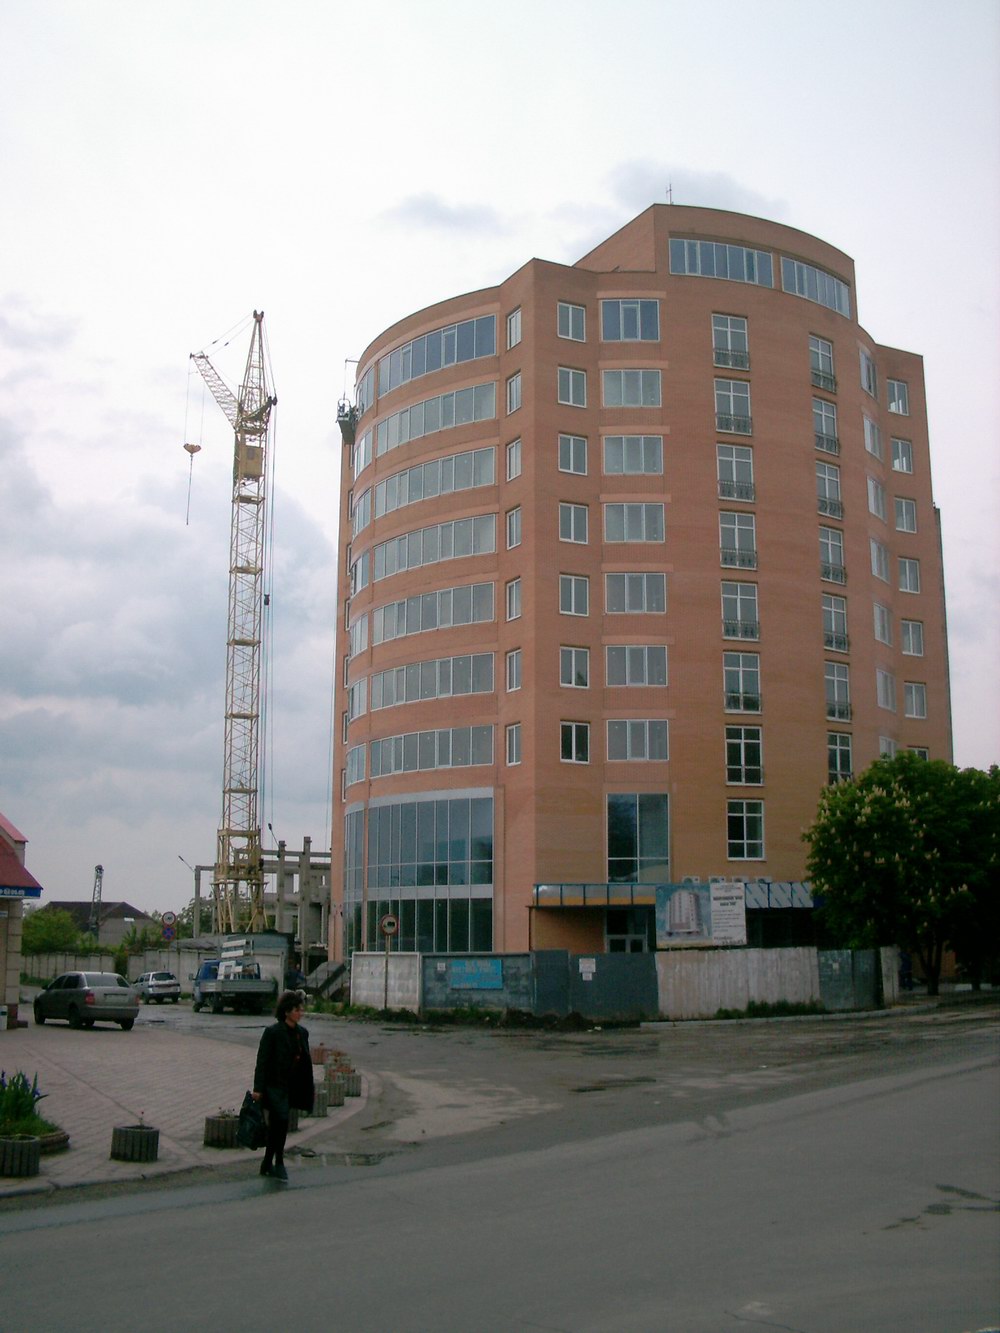 Строительство офисного здания на пересечении Советской(?) и Ленина [Mihalich]